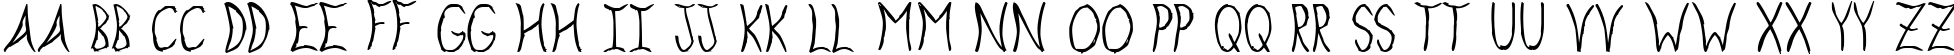 Пример написания английского алфавита шрифтом Exploding Sheep